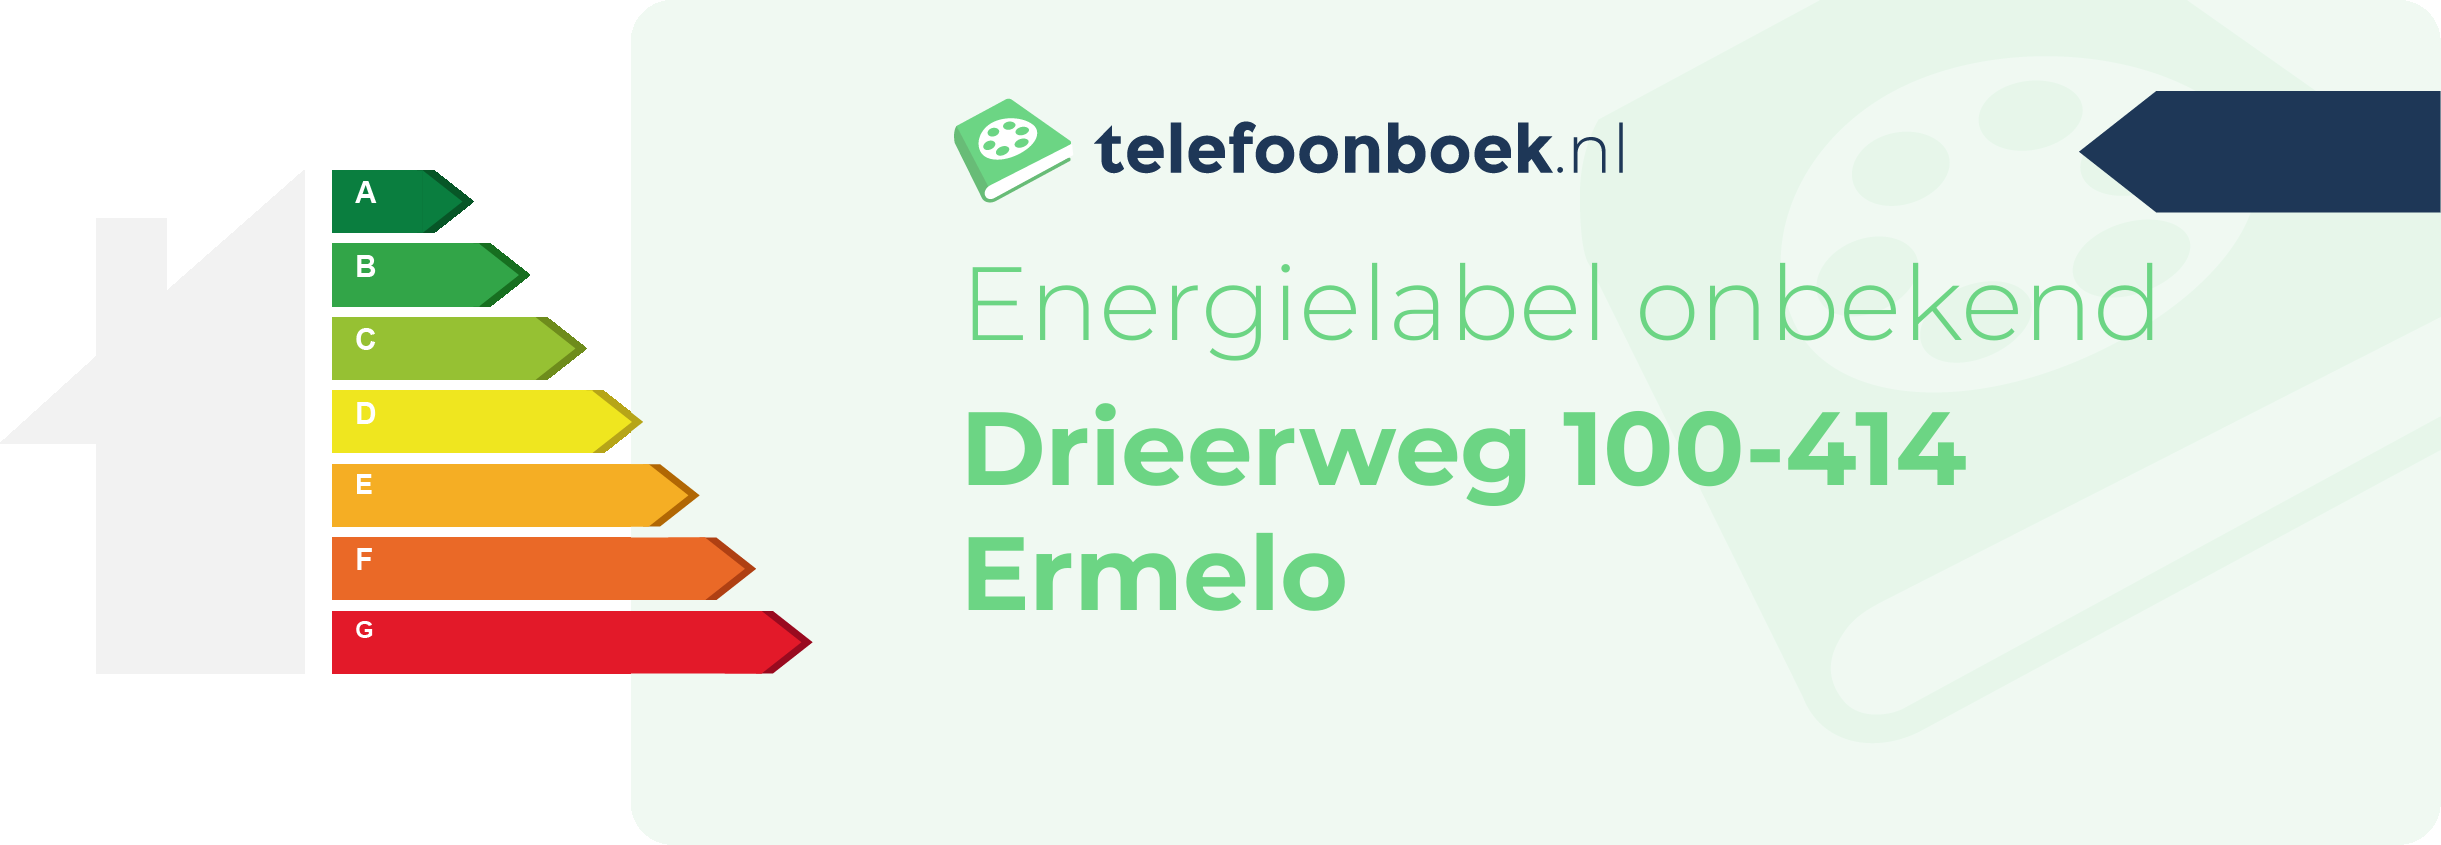 Energielabel Drieerweg 100-414 Ermelo